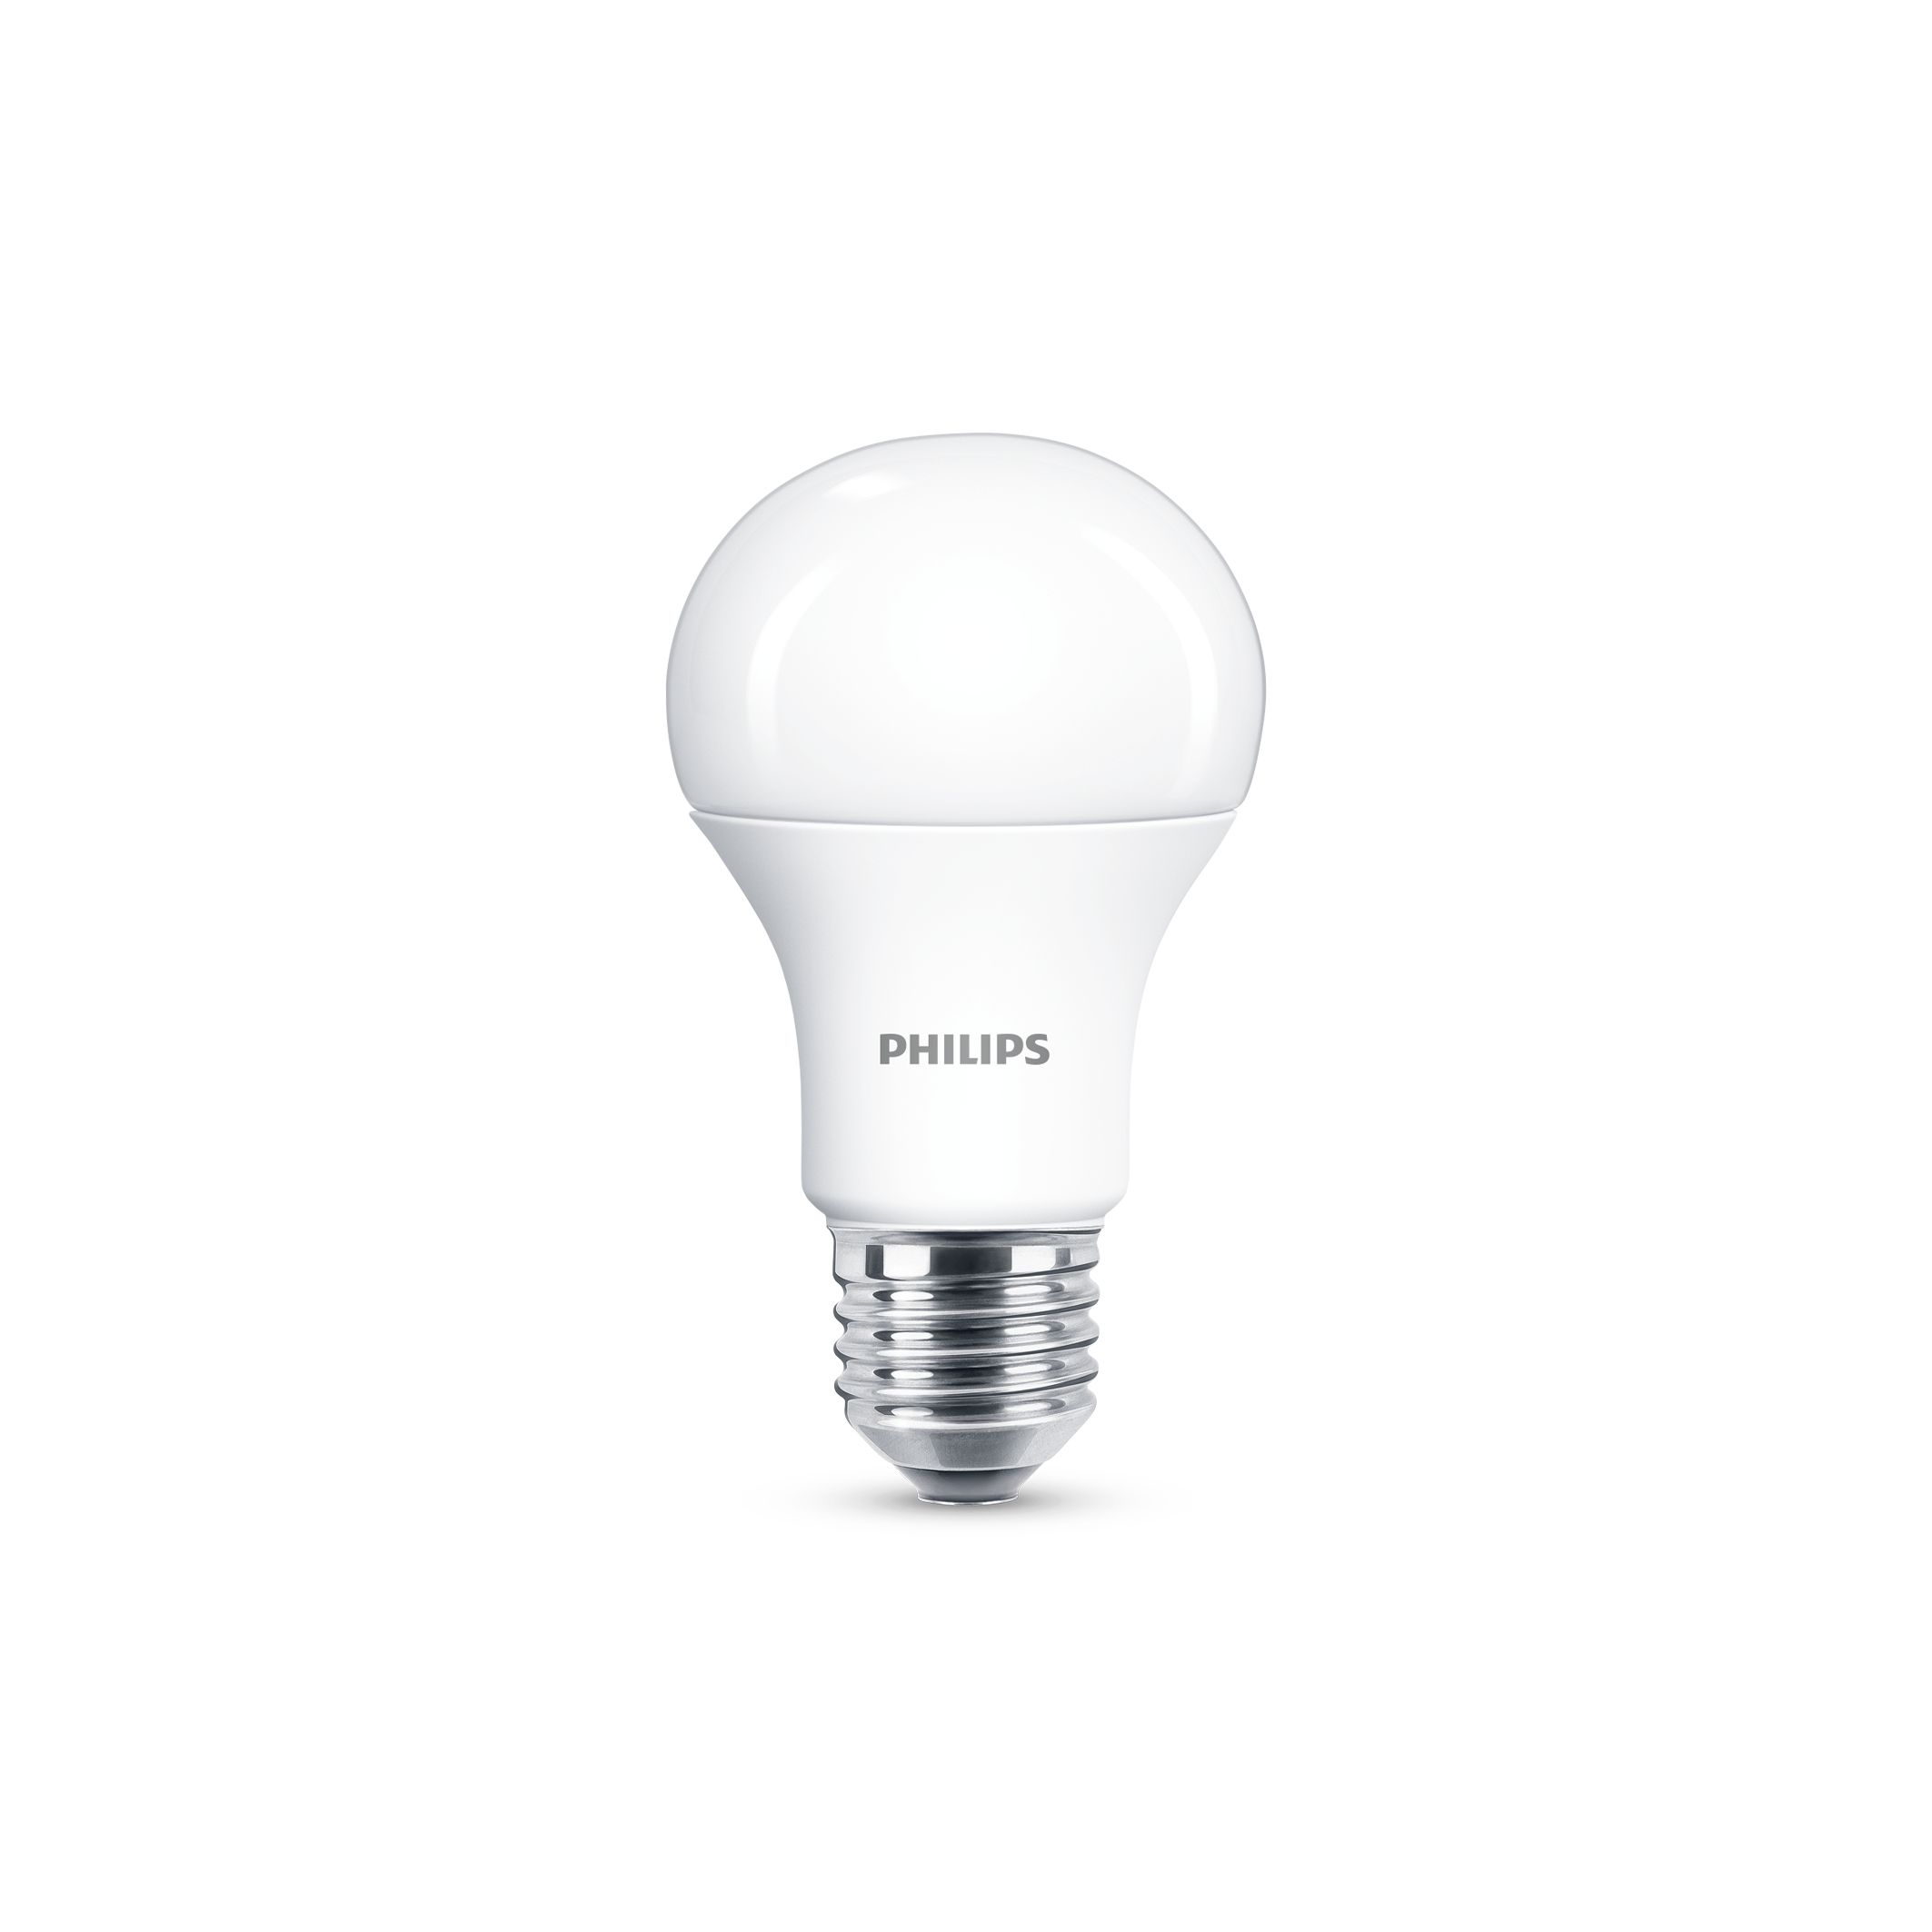 5W 7W 9W 12W LED E27 Light Bulbs Equivalent 40W 60W 75W 100W Incandescent Lamp